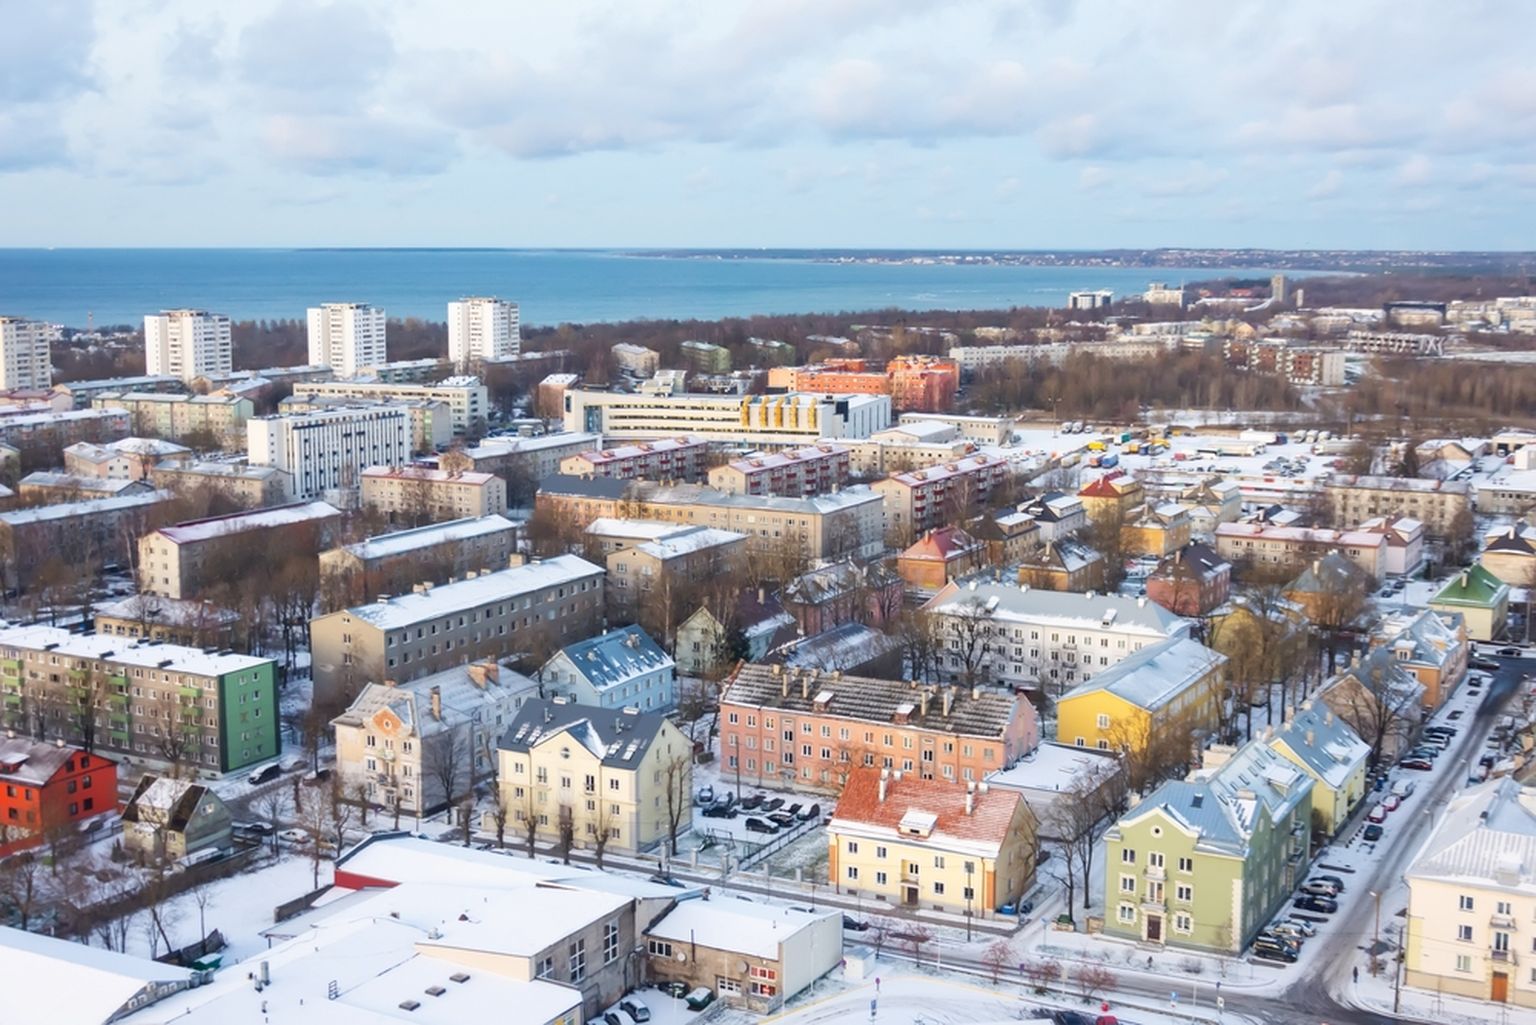 Eesti keskmist palka teenivale inimesele jääb suur osa kesklinna üürikorteritest kõrge või väga kõrge üürihinna tõttu kättesaamatuks.